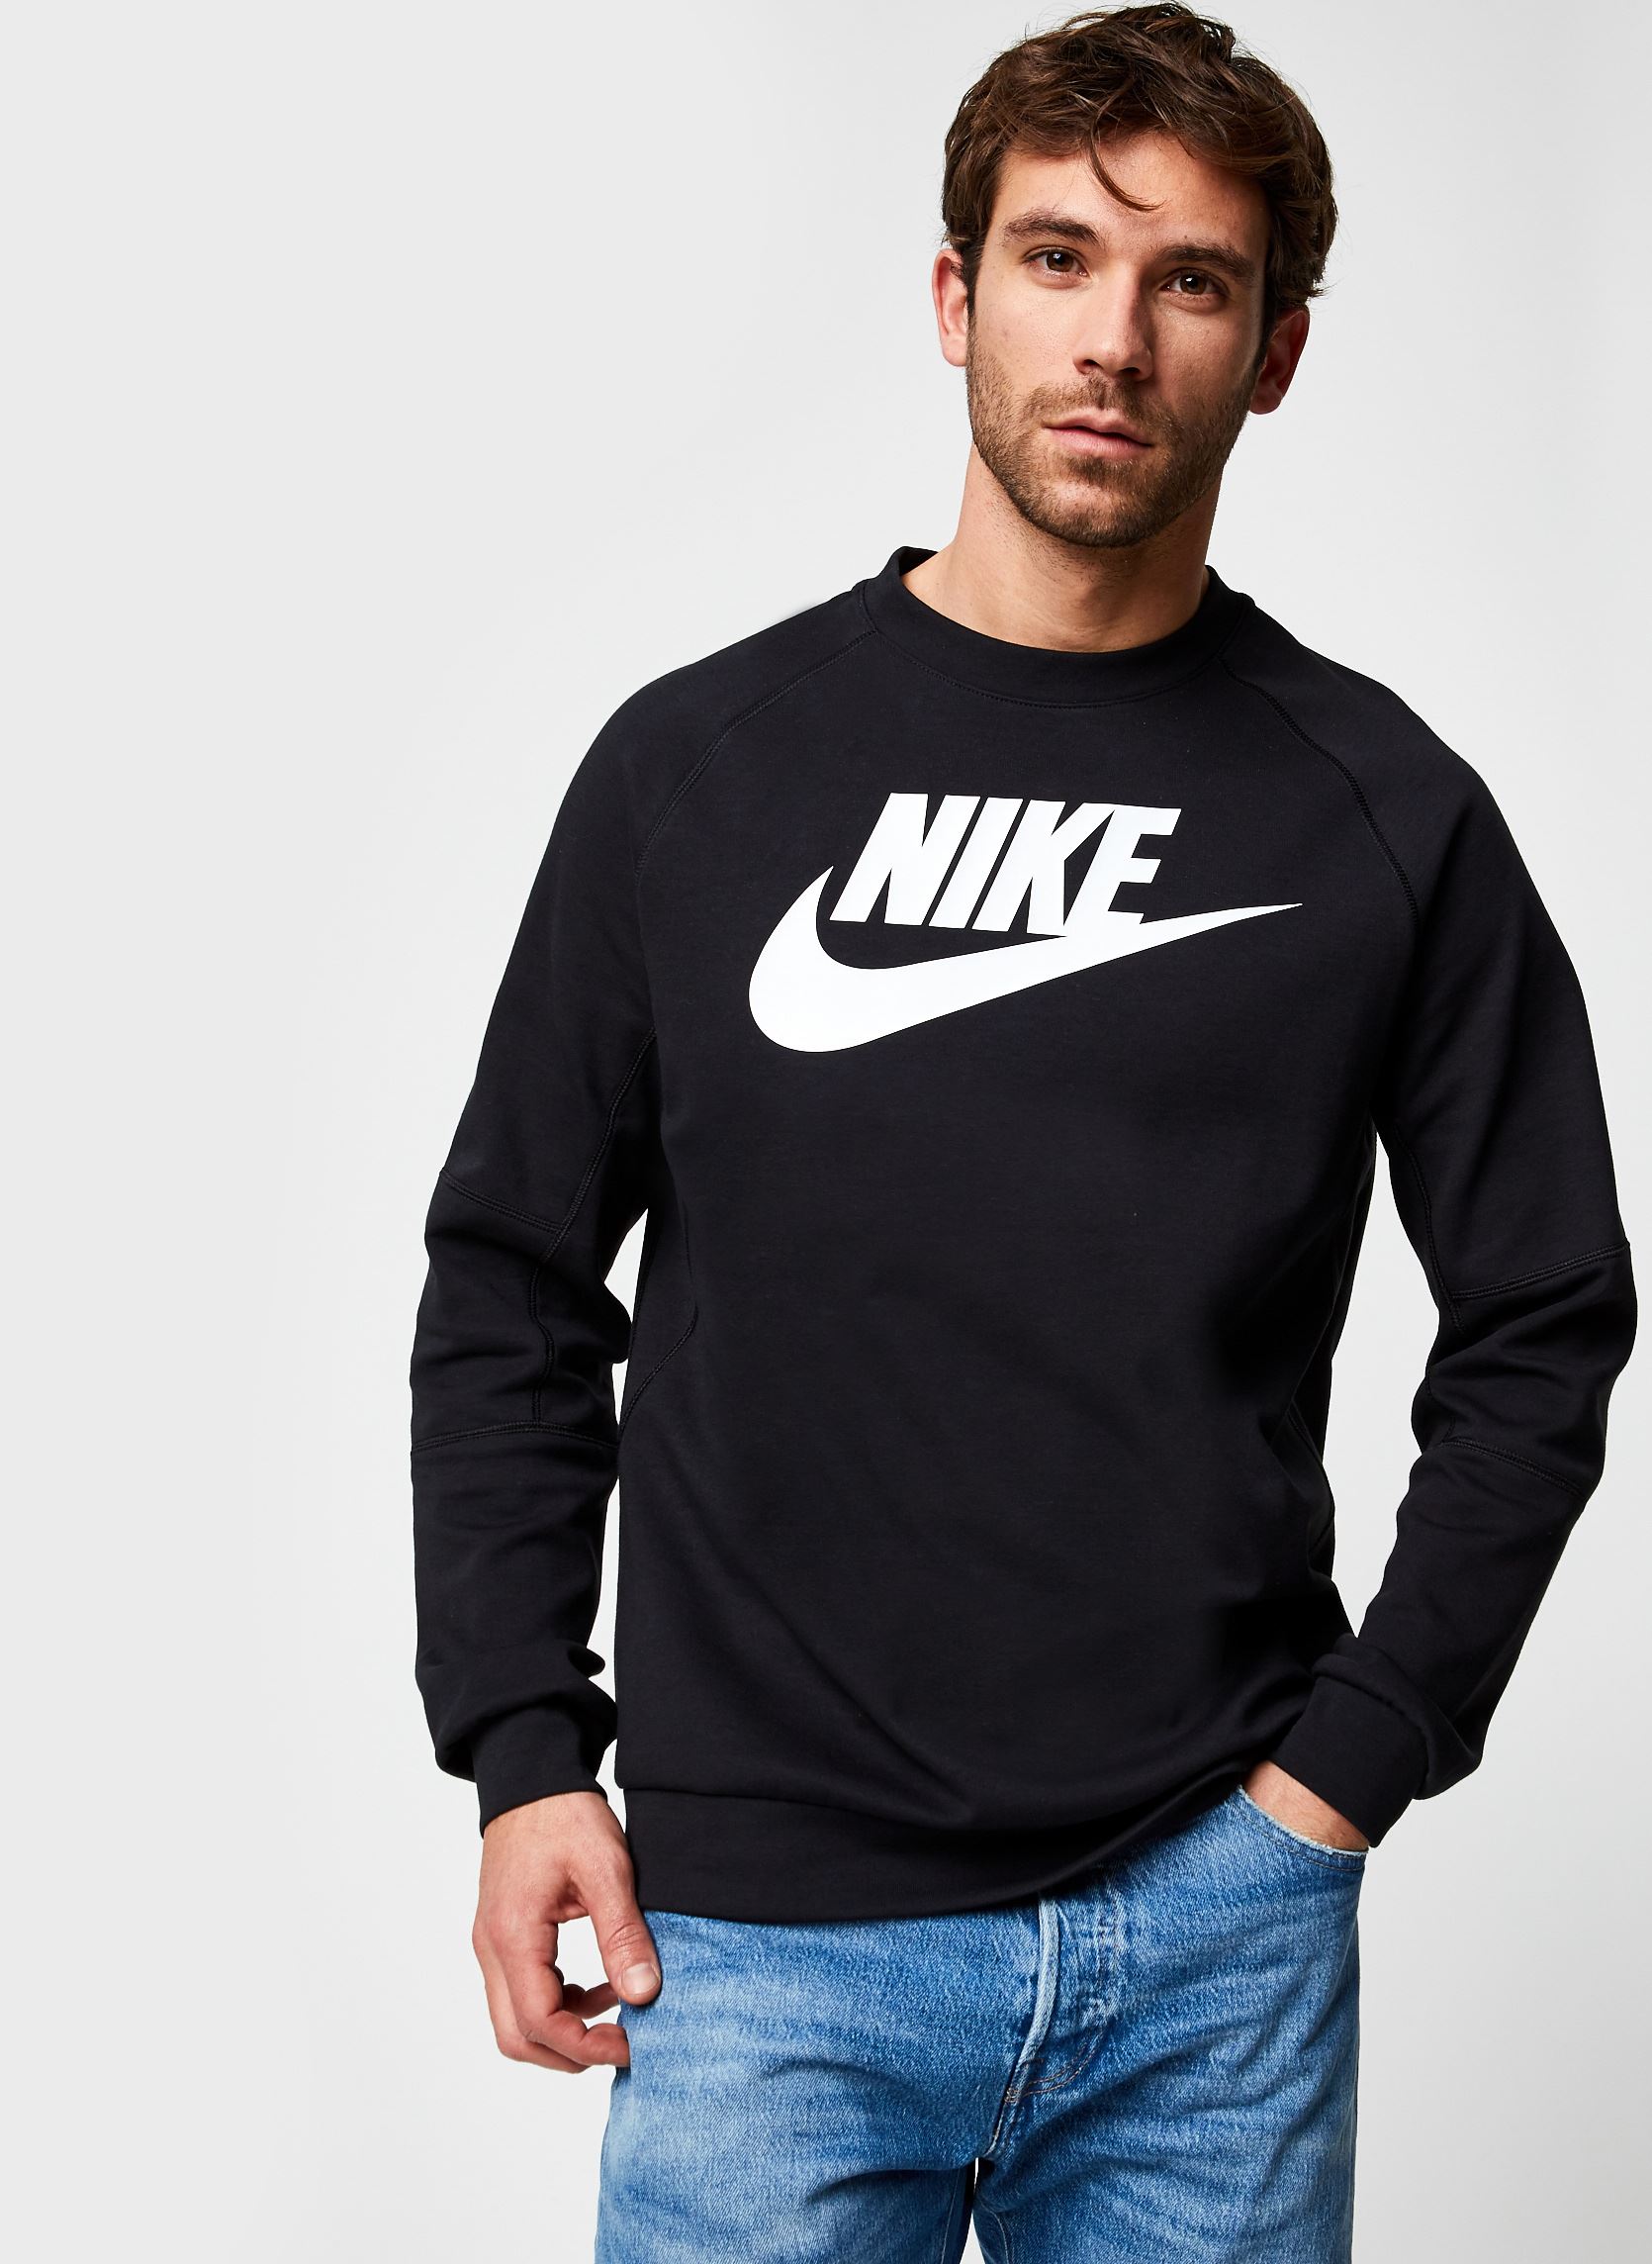 Blusão Nike Sportswear Classic - DFR.Clothing